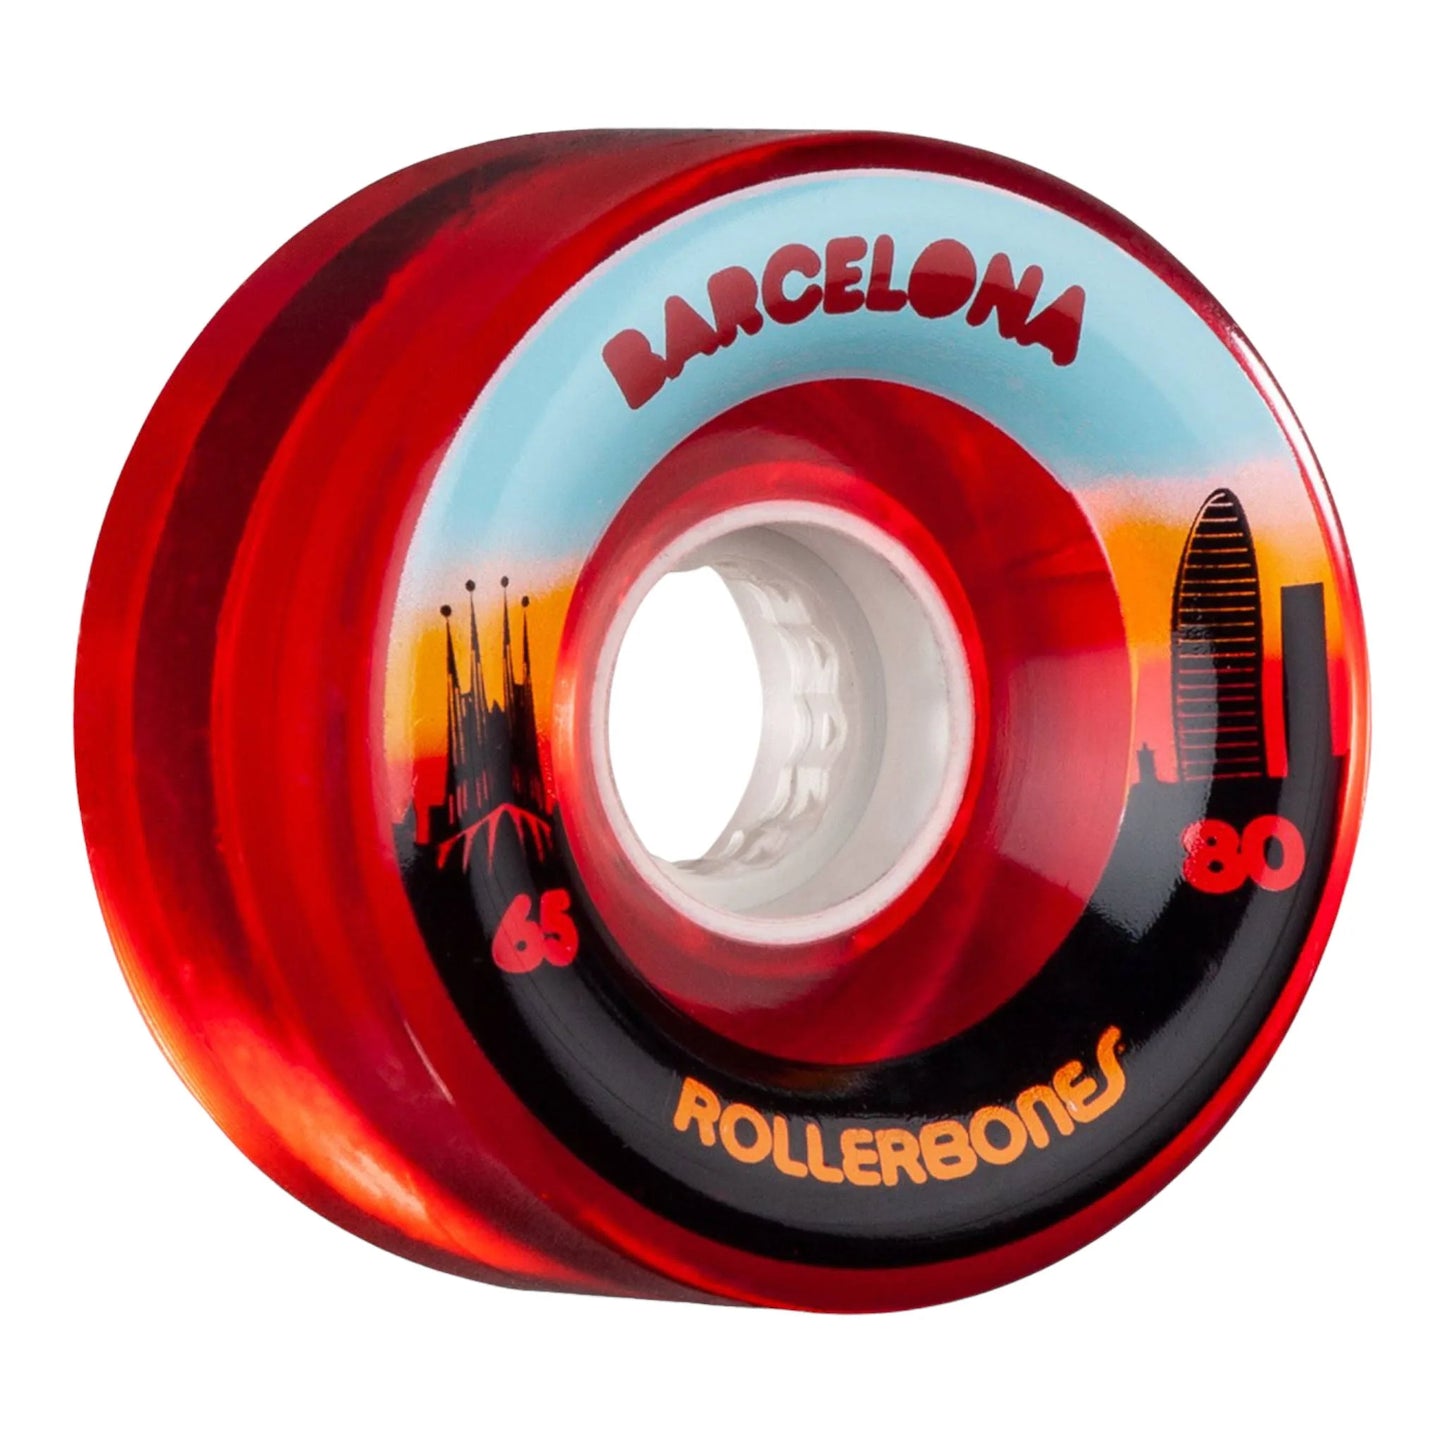 RollerBones Barcelona Outdoor Wheels 8 Pack